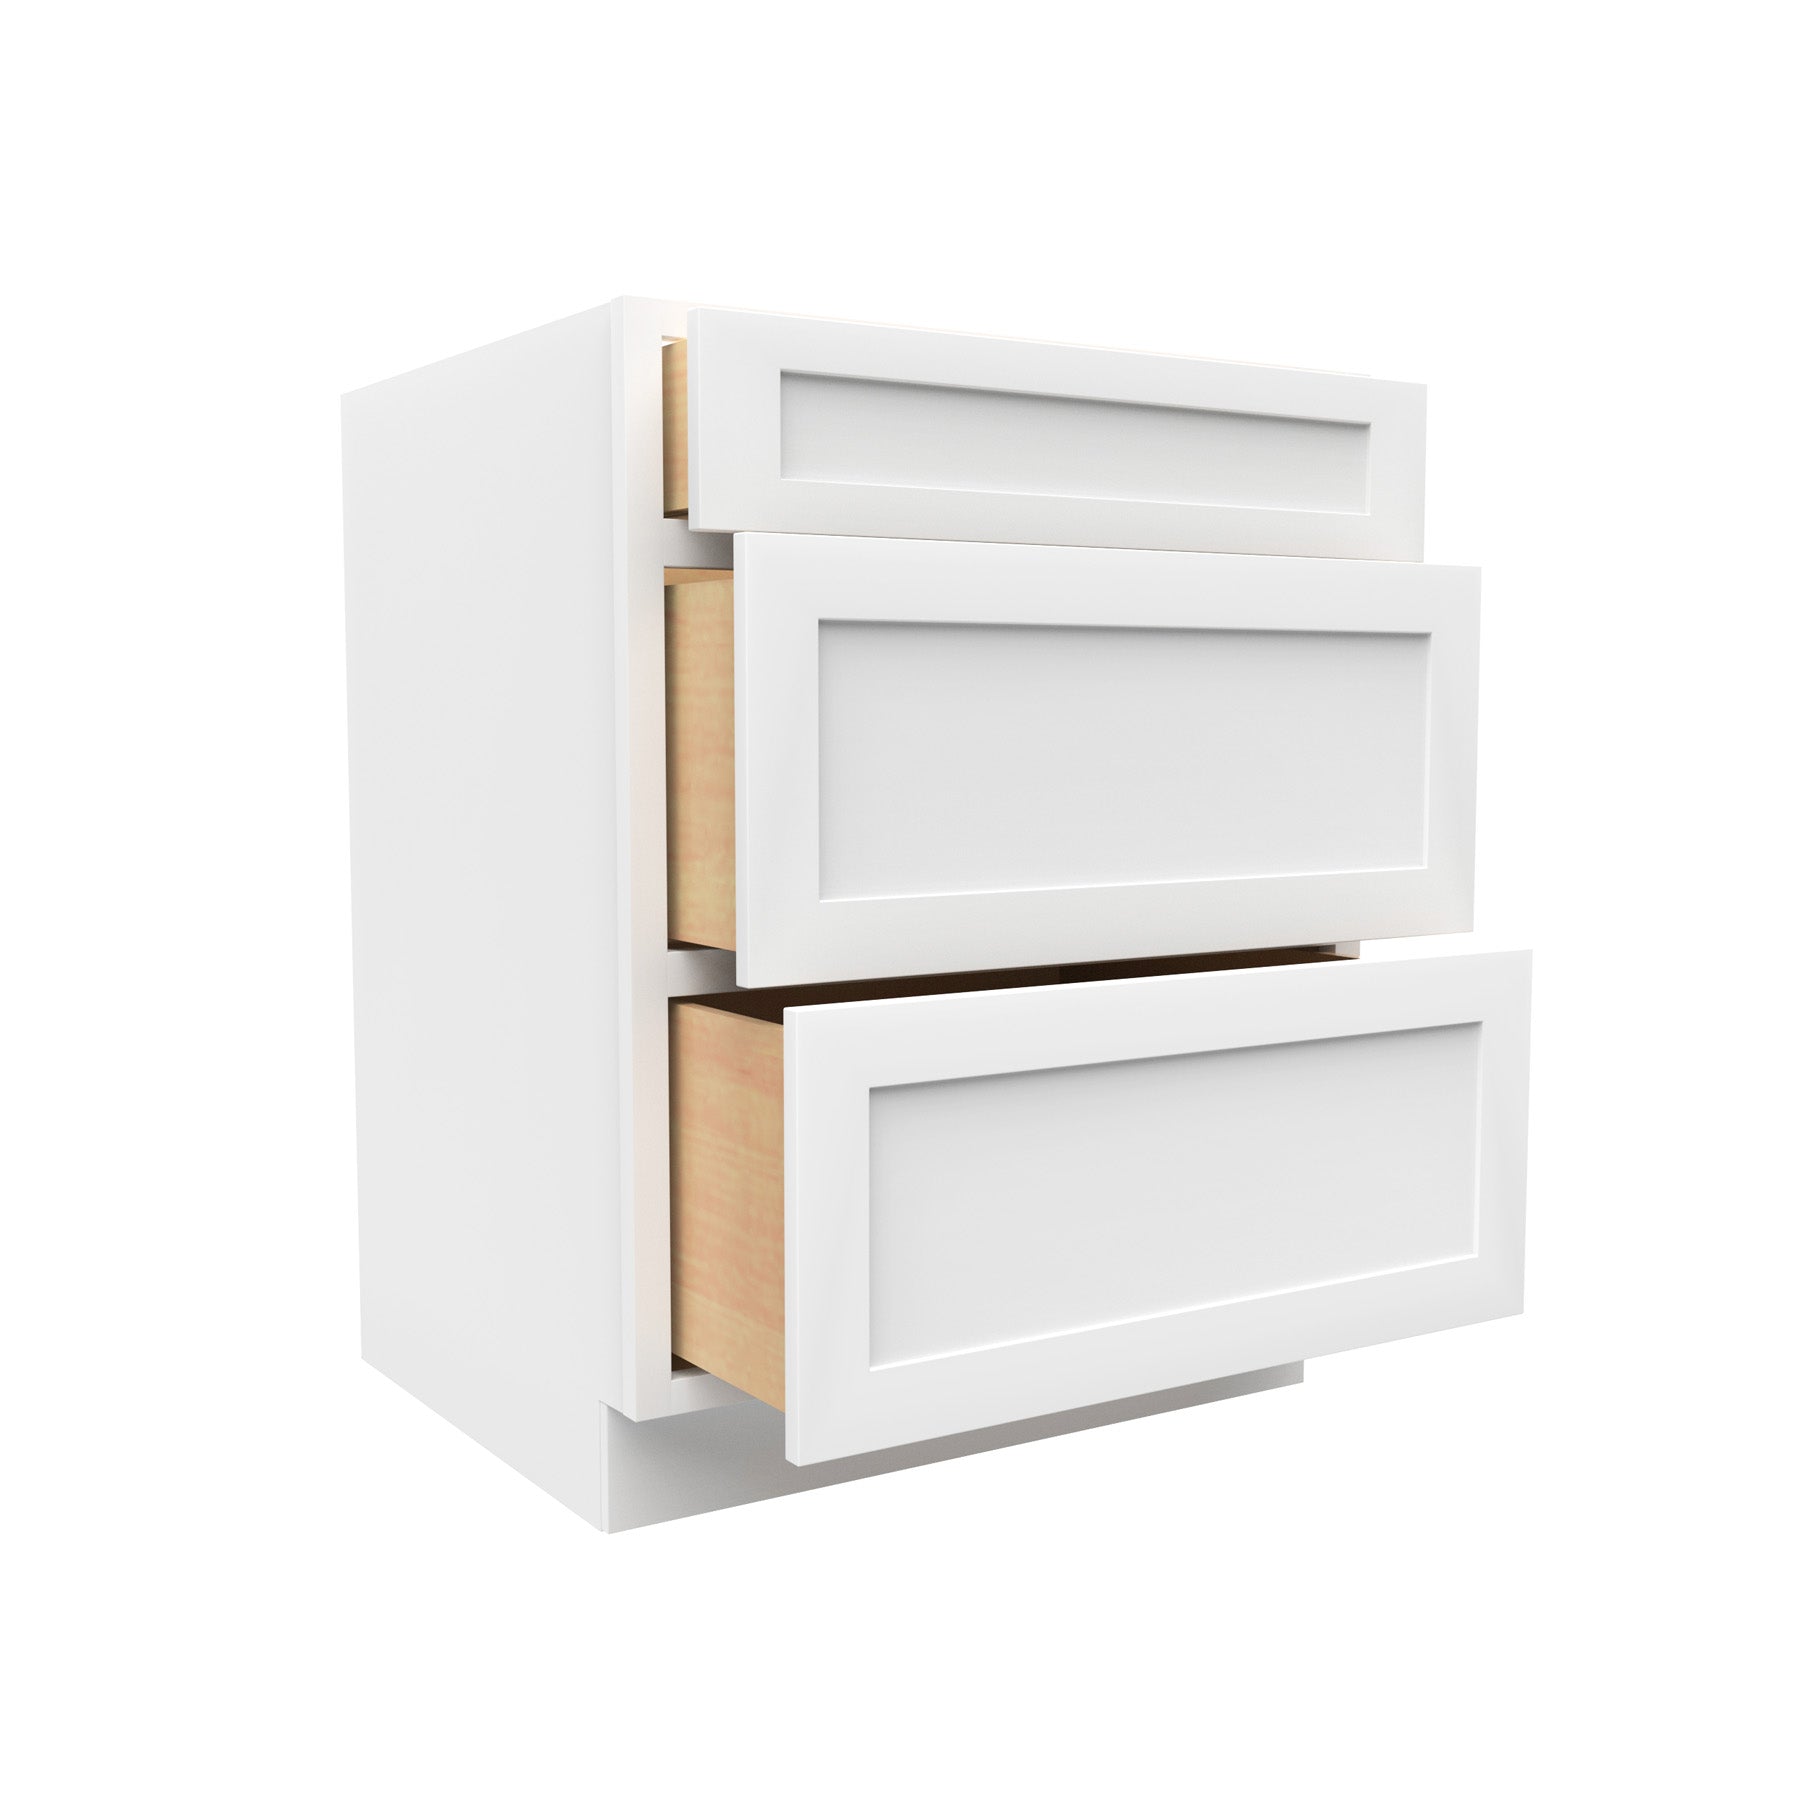 RTA - Elegant White - 3 Drawer Base Cabinet | 27"W x 34.5"H x 24"D